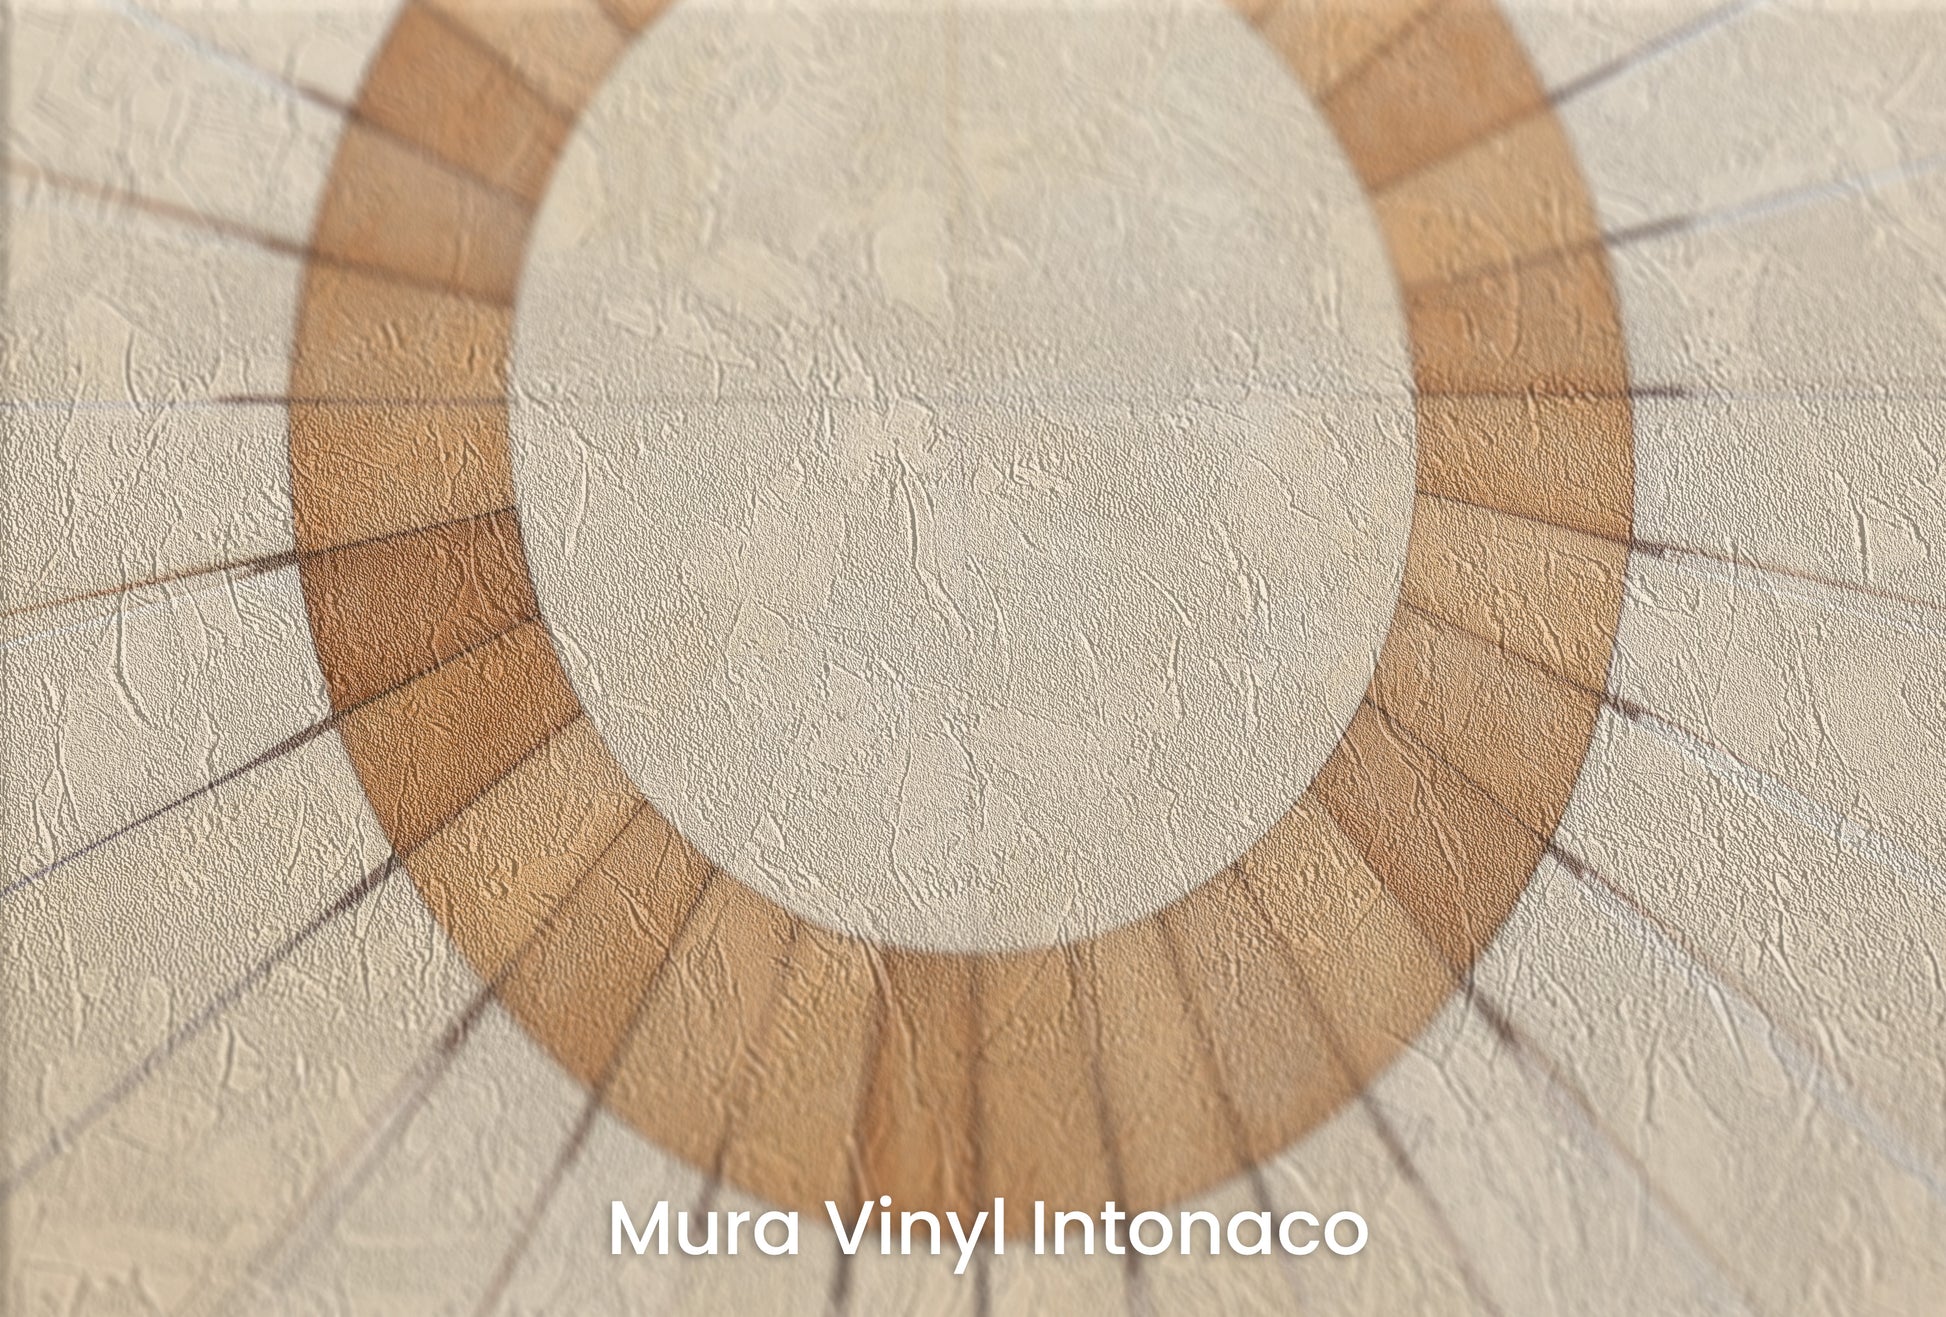 Zbliżenie na artystyczną fototapetę o nazwie SUNBURST OVAL MOSAIC na podłożu Mura Vinyl Intonaco - struktura tartego tynku.